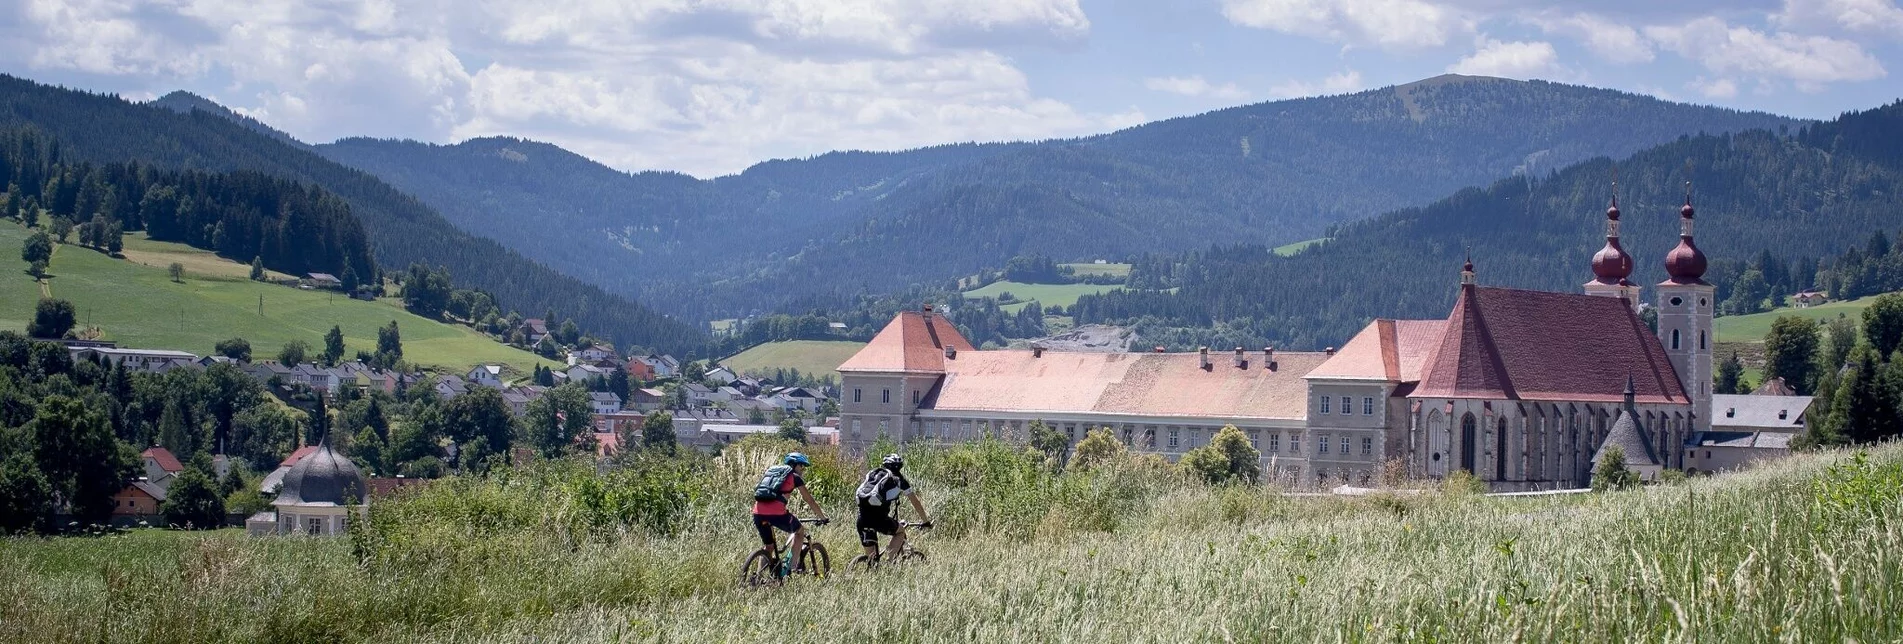 Radfahren Tal-Runde von St. Lambrecht Richtung Laßnitz - Touren-Impression #1 | © Tourismusverband Murau